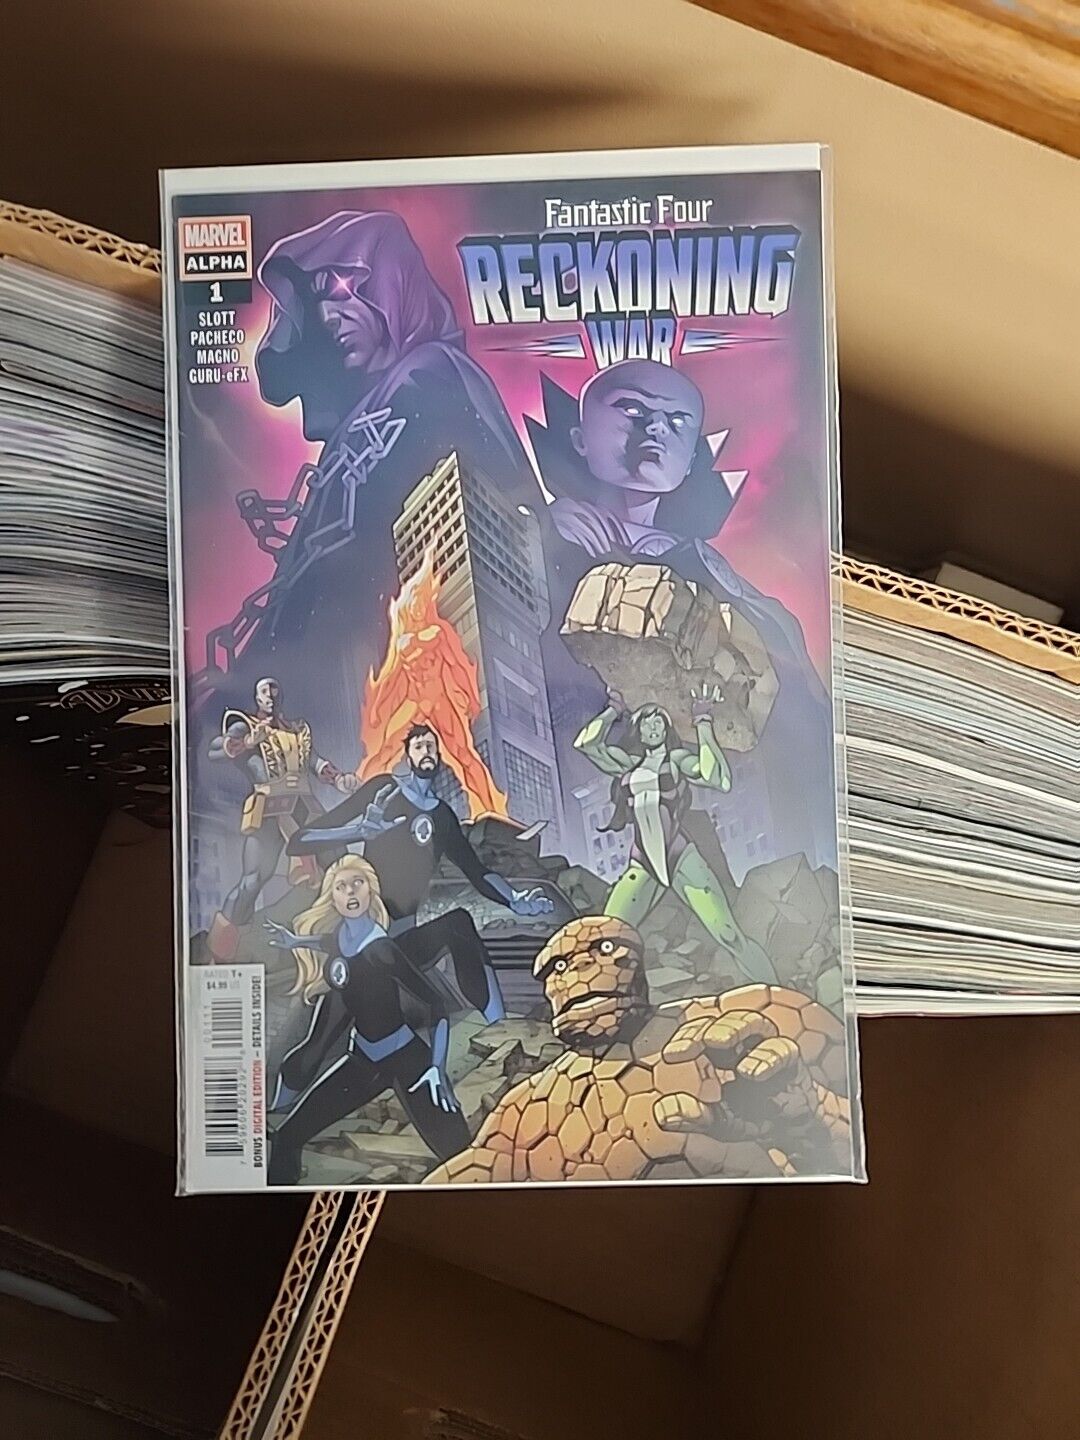 Fantastic Four: Reckoning War Alpha #1 (Marvel Comics April 2022)